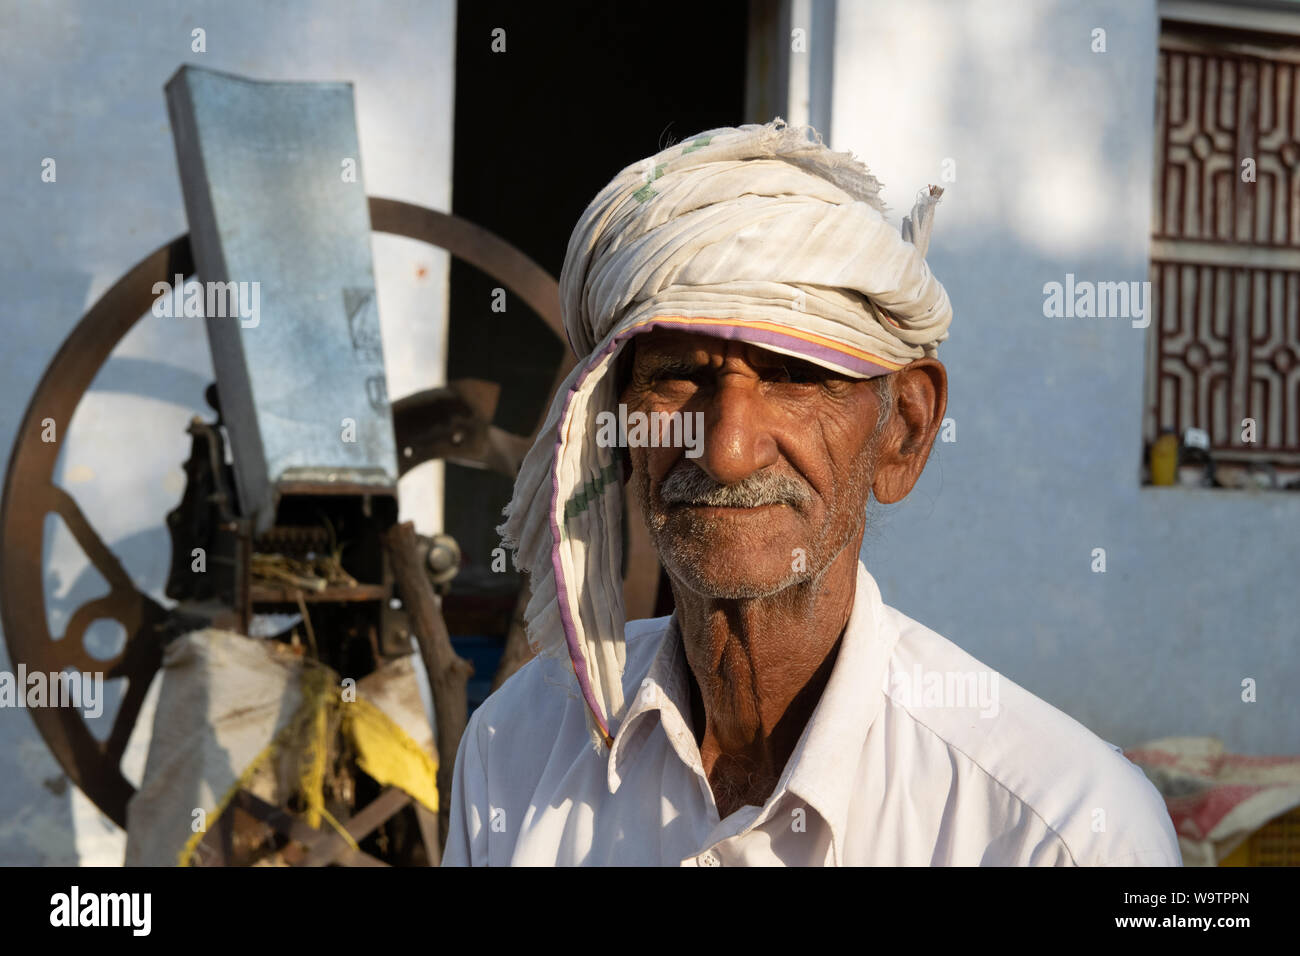 Ein alter Mann sitzt vor einem Hof seinem Haus. Auf dem Kopf trägt er ein Tuch (turban). Straßenszene dans Mandawa (Rajasthan) Banque D'Images